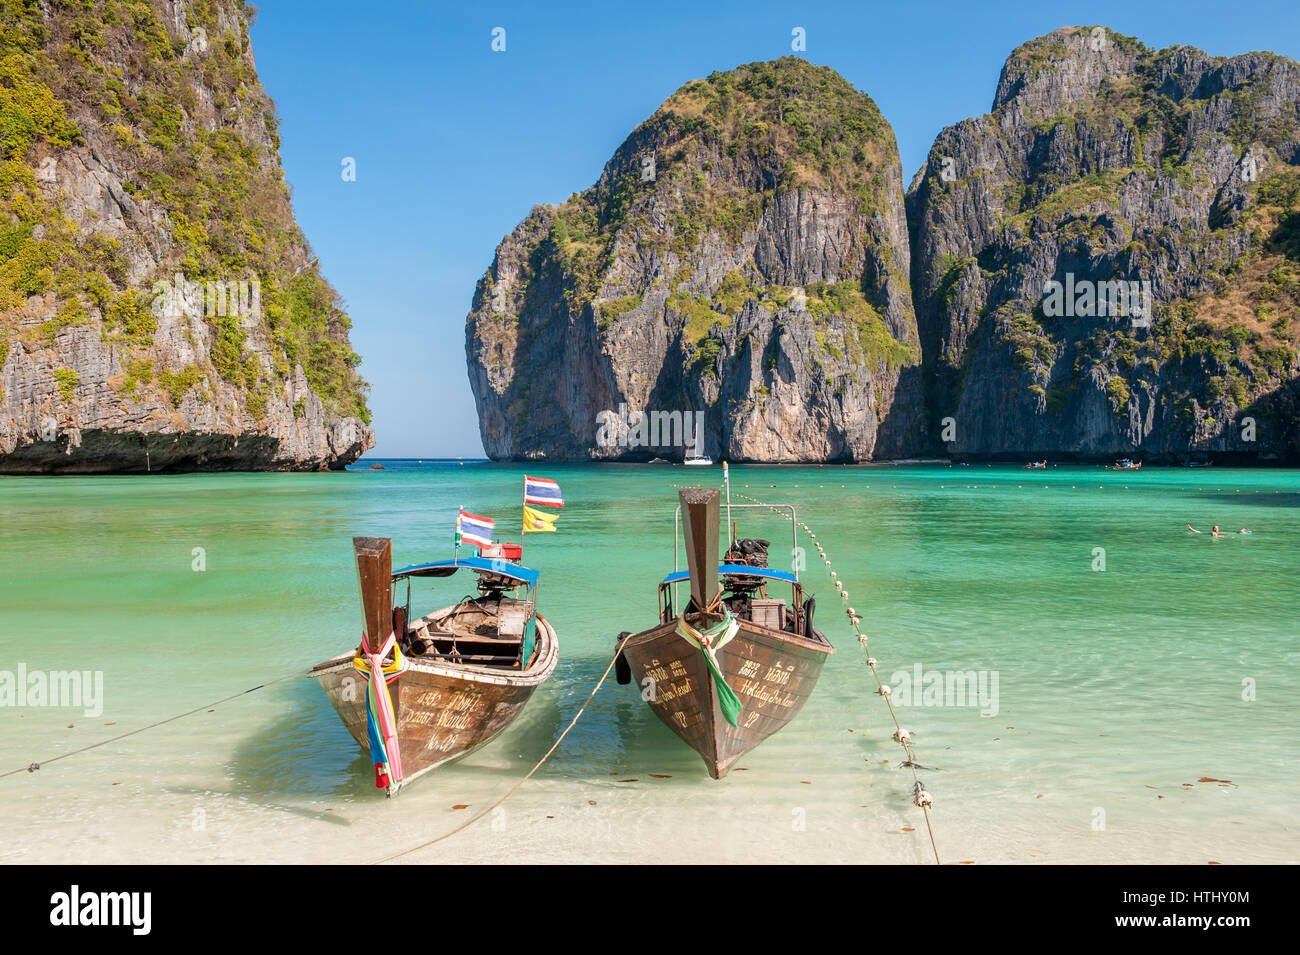 Maya Bay, les îles Phi Phi, Thaïlande est une destination populaire tour de Phuket et connu comme l'emplacement pour le film 'La plage' Banque D'Images